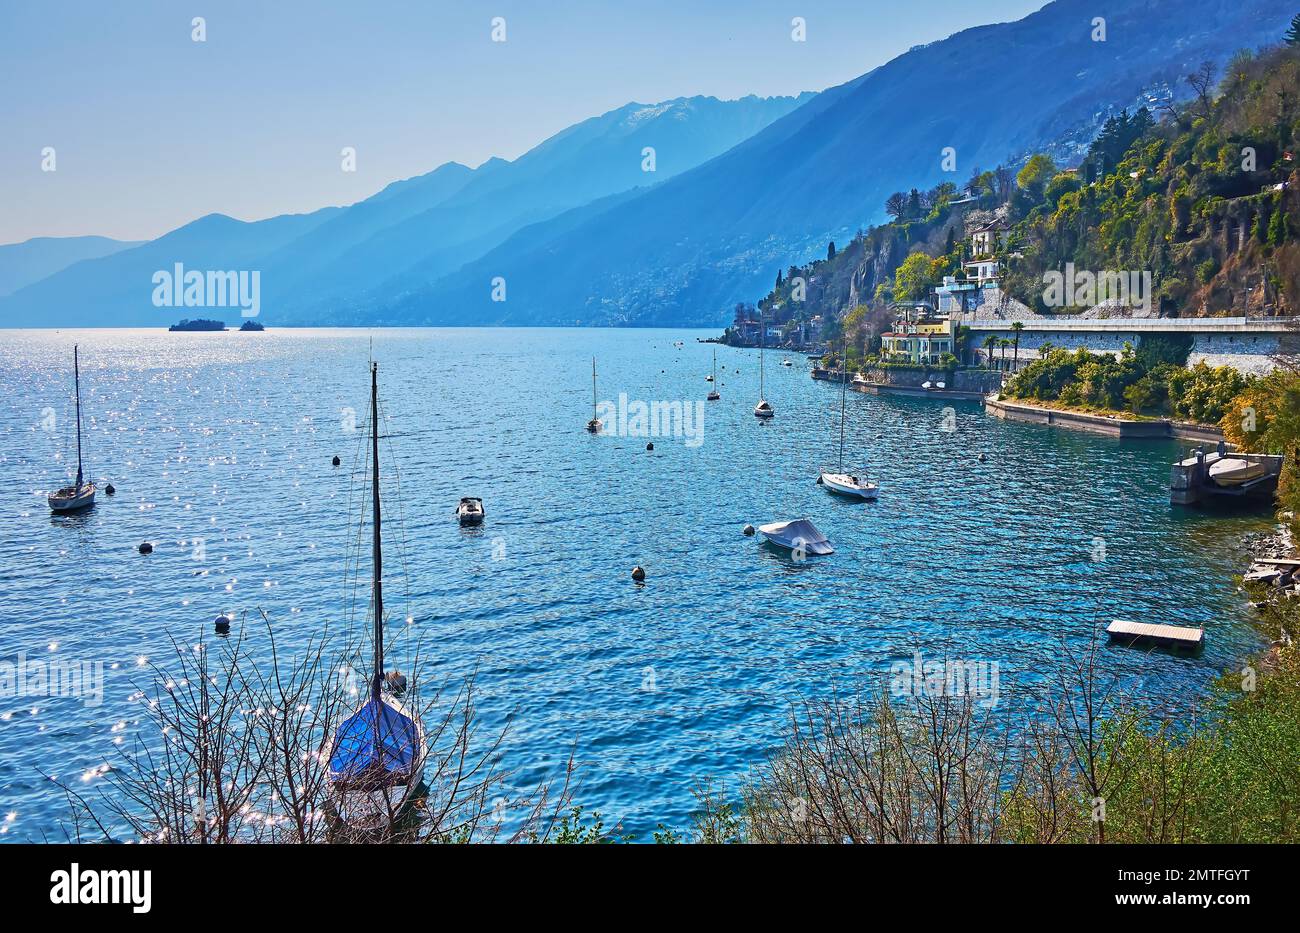 Los hermosos yates de vela en las aguas azules del lago Maggiore, rodeado de montañas nebulosas, Ascona, Suiza Foto de stock